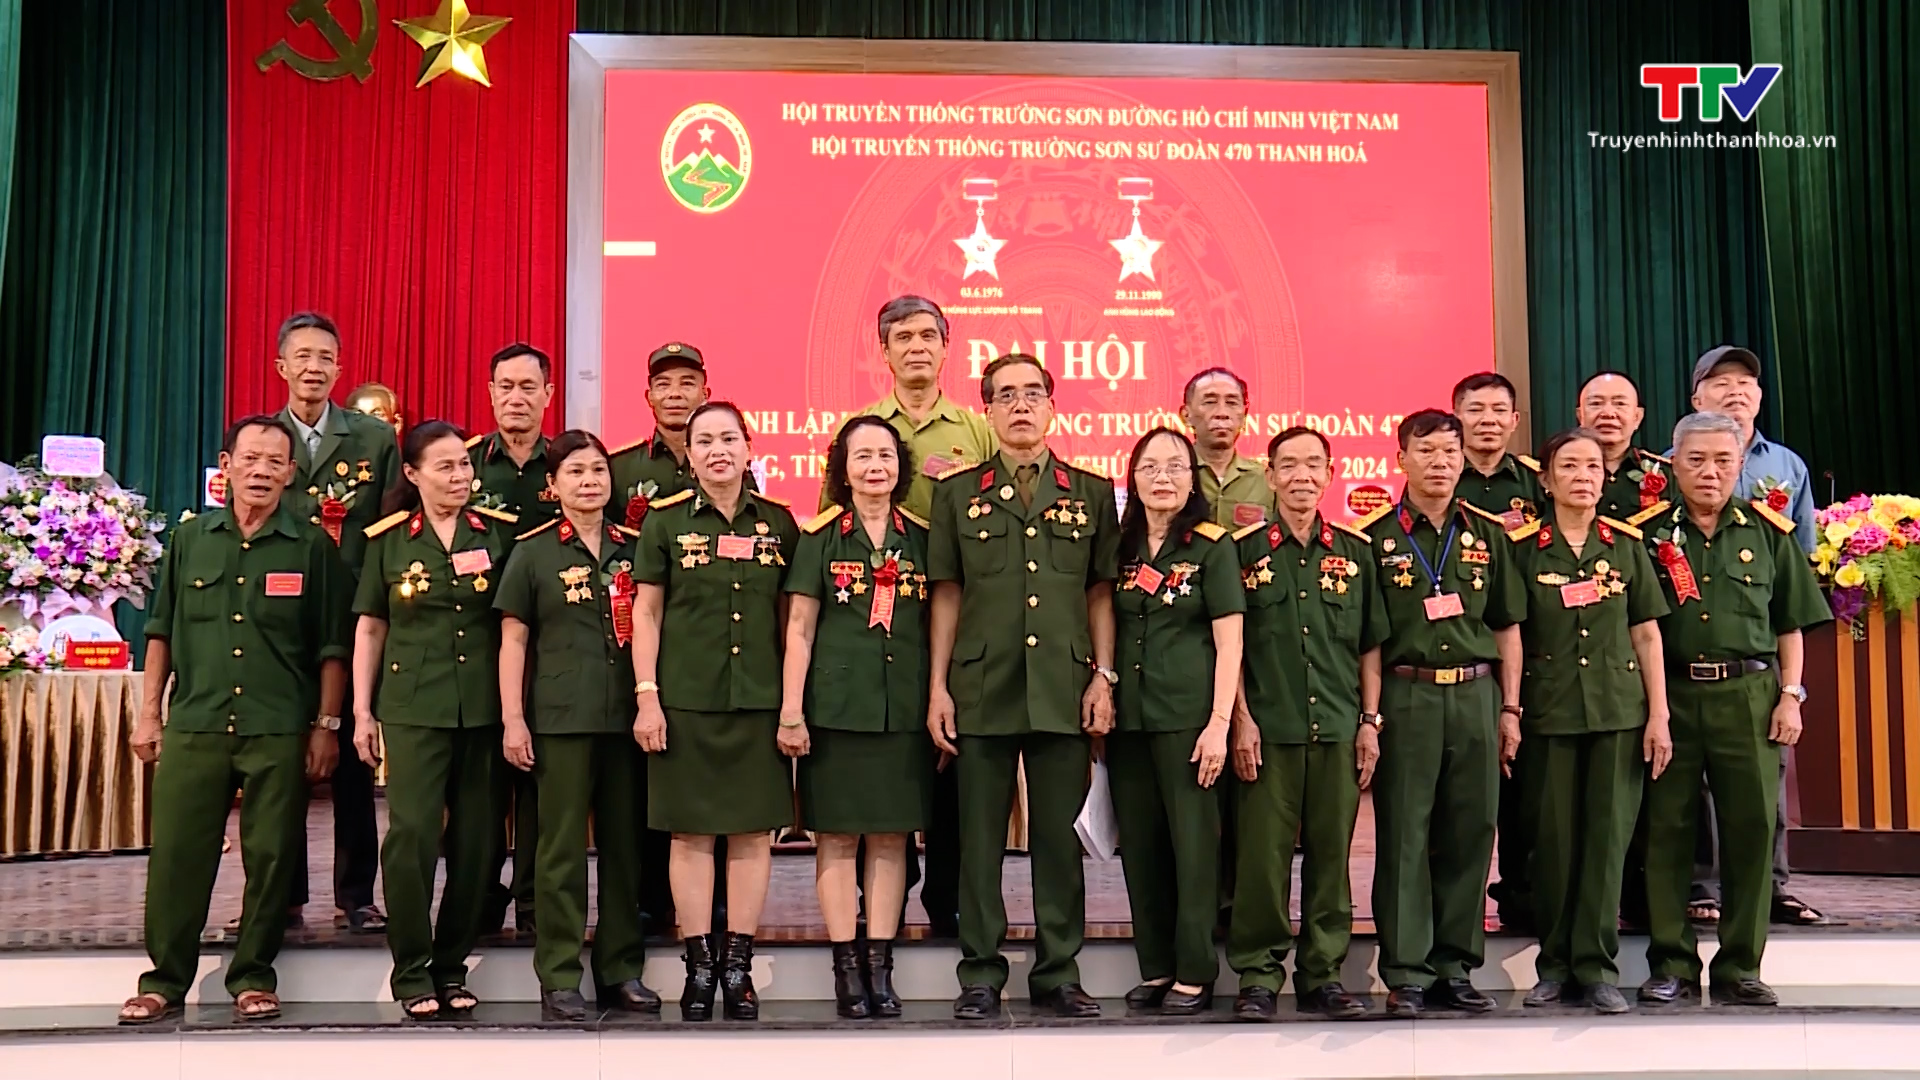 Đại hội lần thứ nhất Hội truyền thống Trường Sơn Sư đoàn 470 tỉnh Thanh Hóa- Ảnh 1.